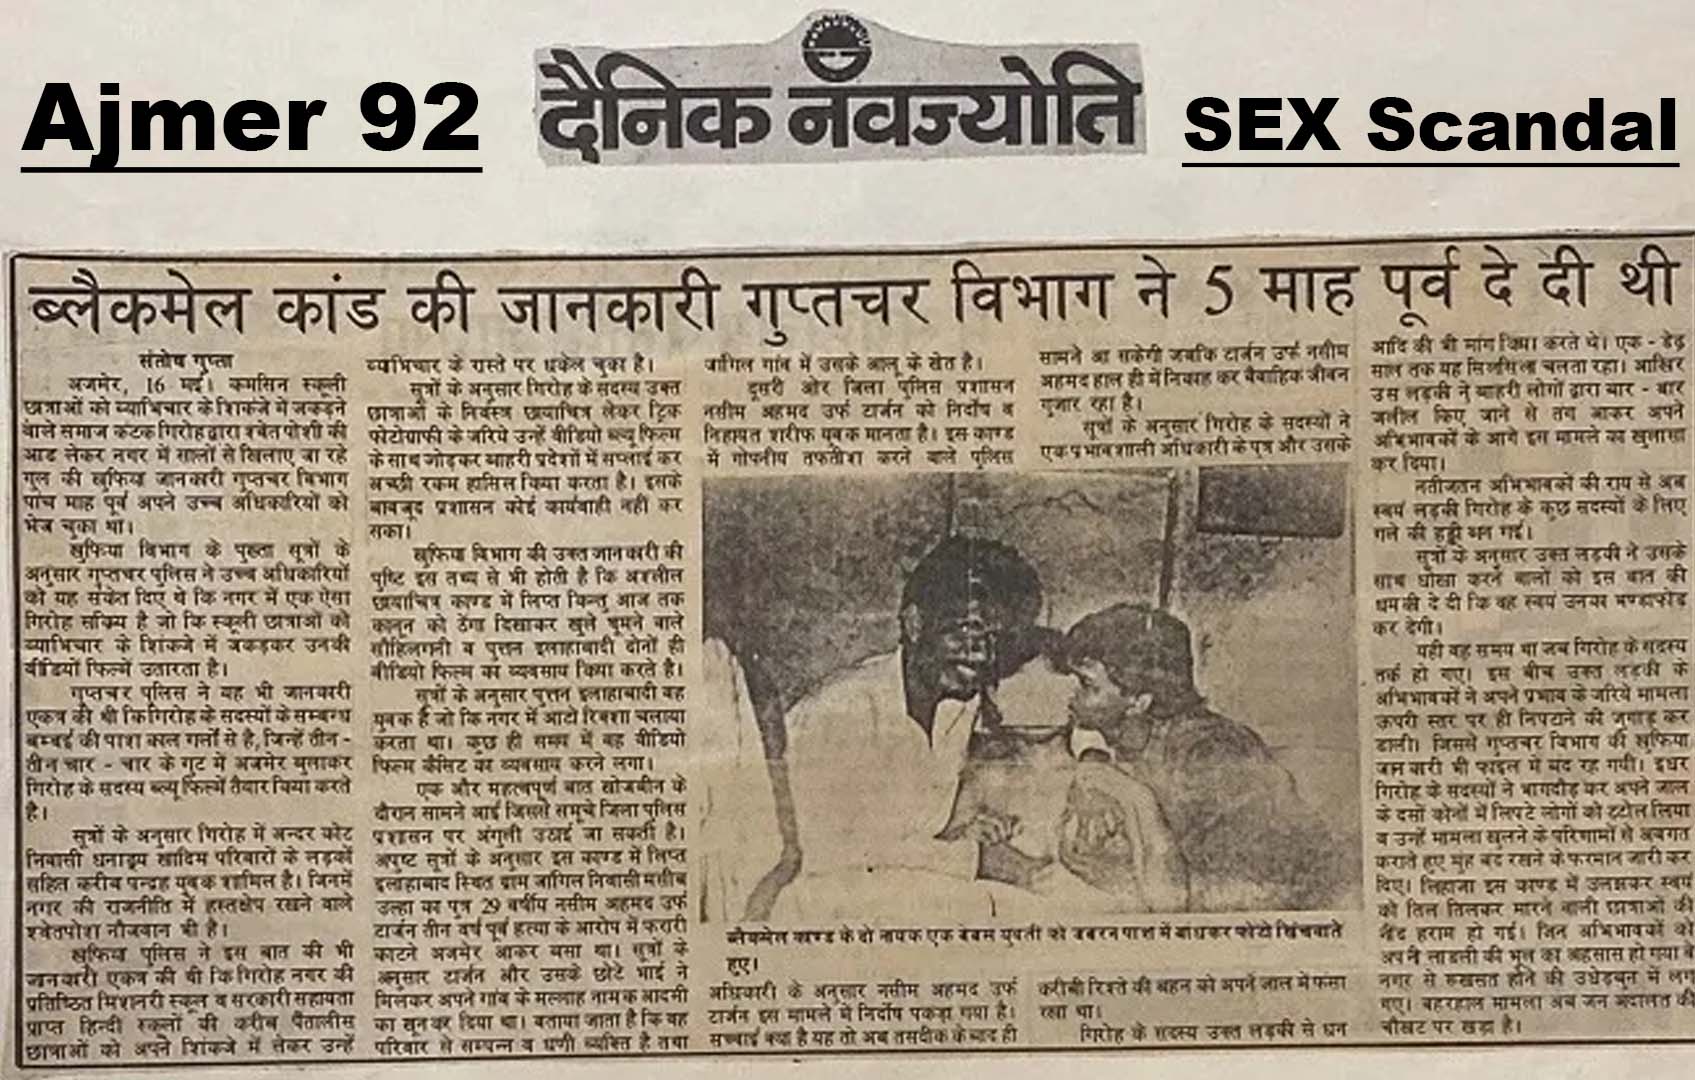 PFL News - Ajmer 92 : हिन्दुस्तान के इतिहास का सबसे बड़ा सेक्स कांड, तस्वीर मजहबियों का शिकार बनी हिन्दू लड़कियों की  